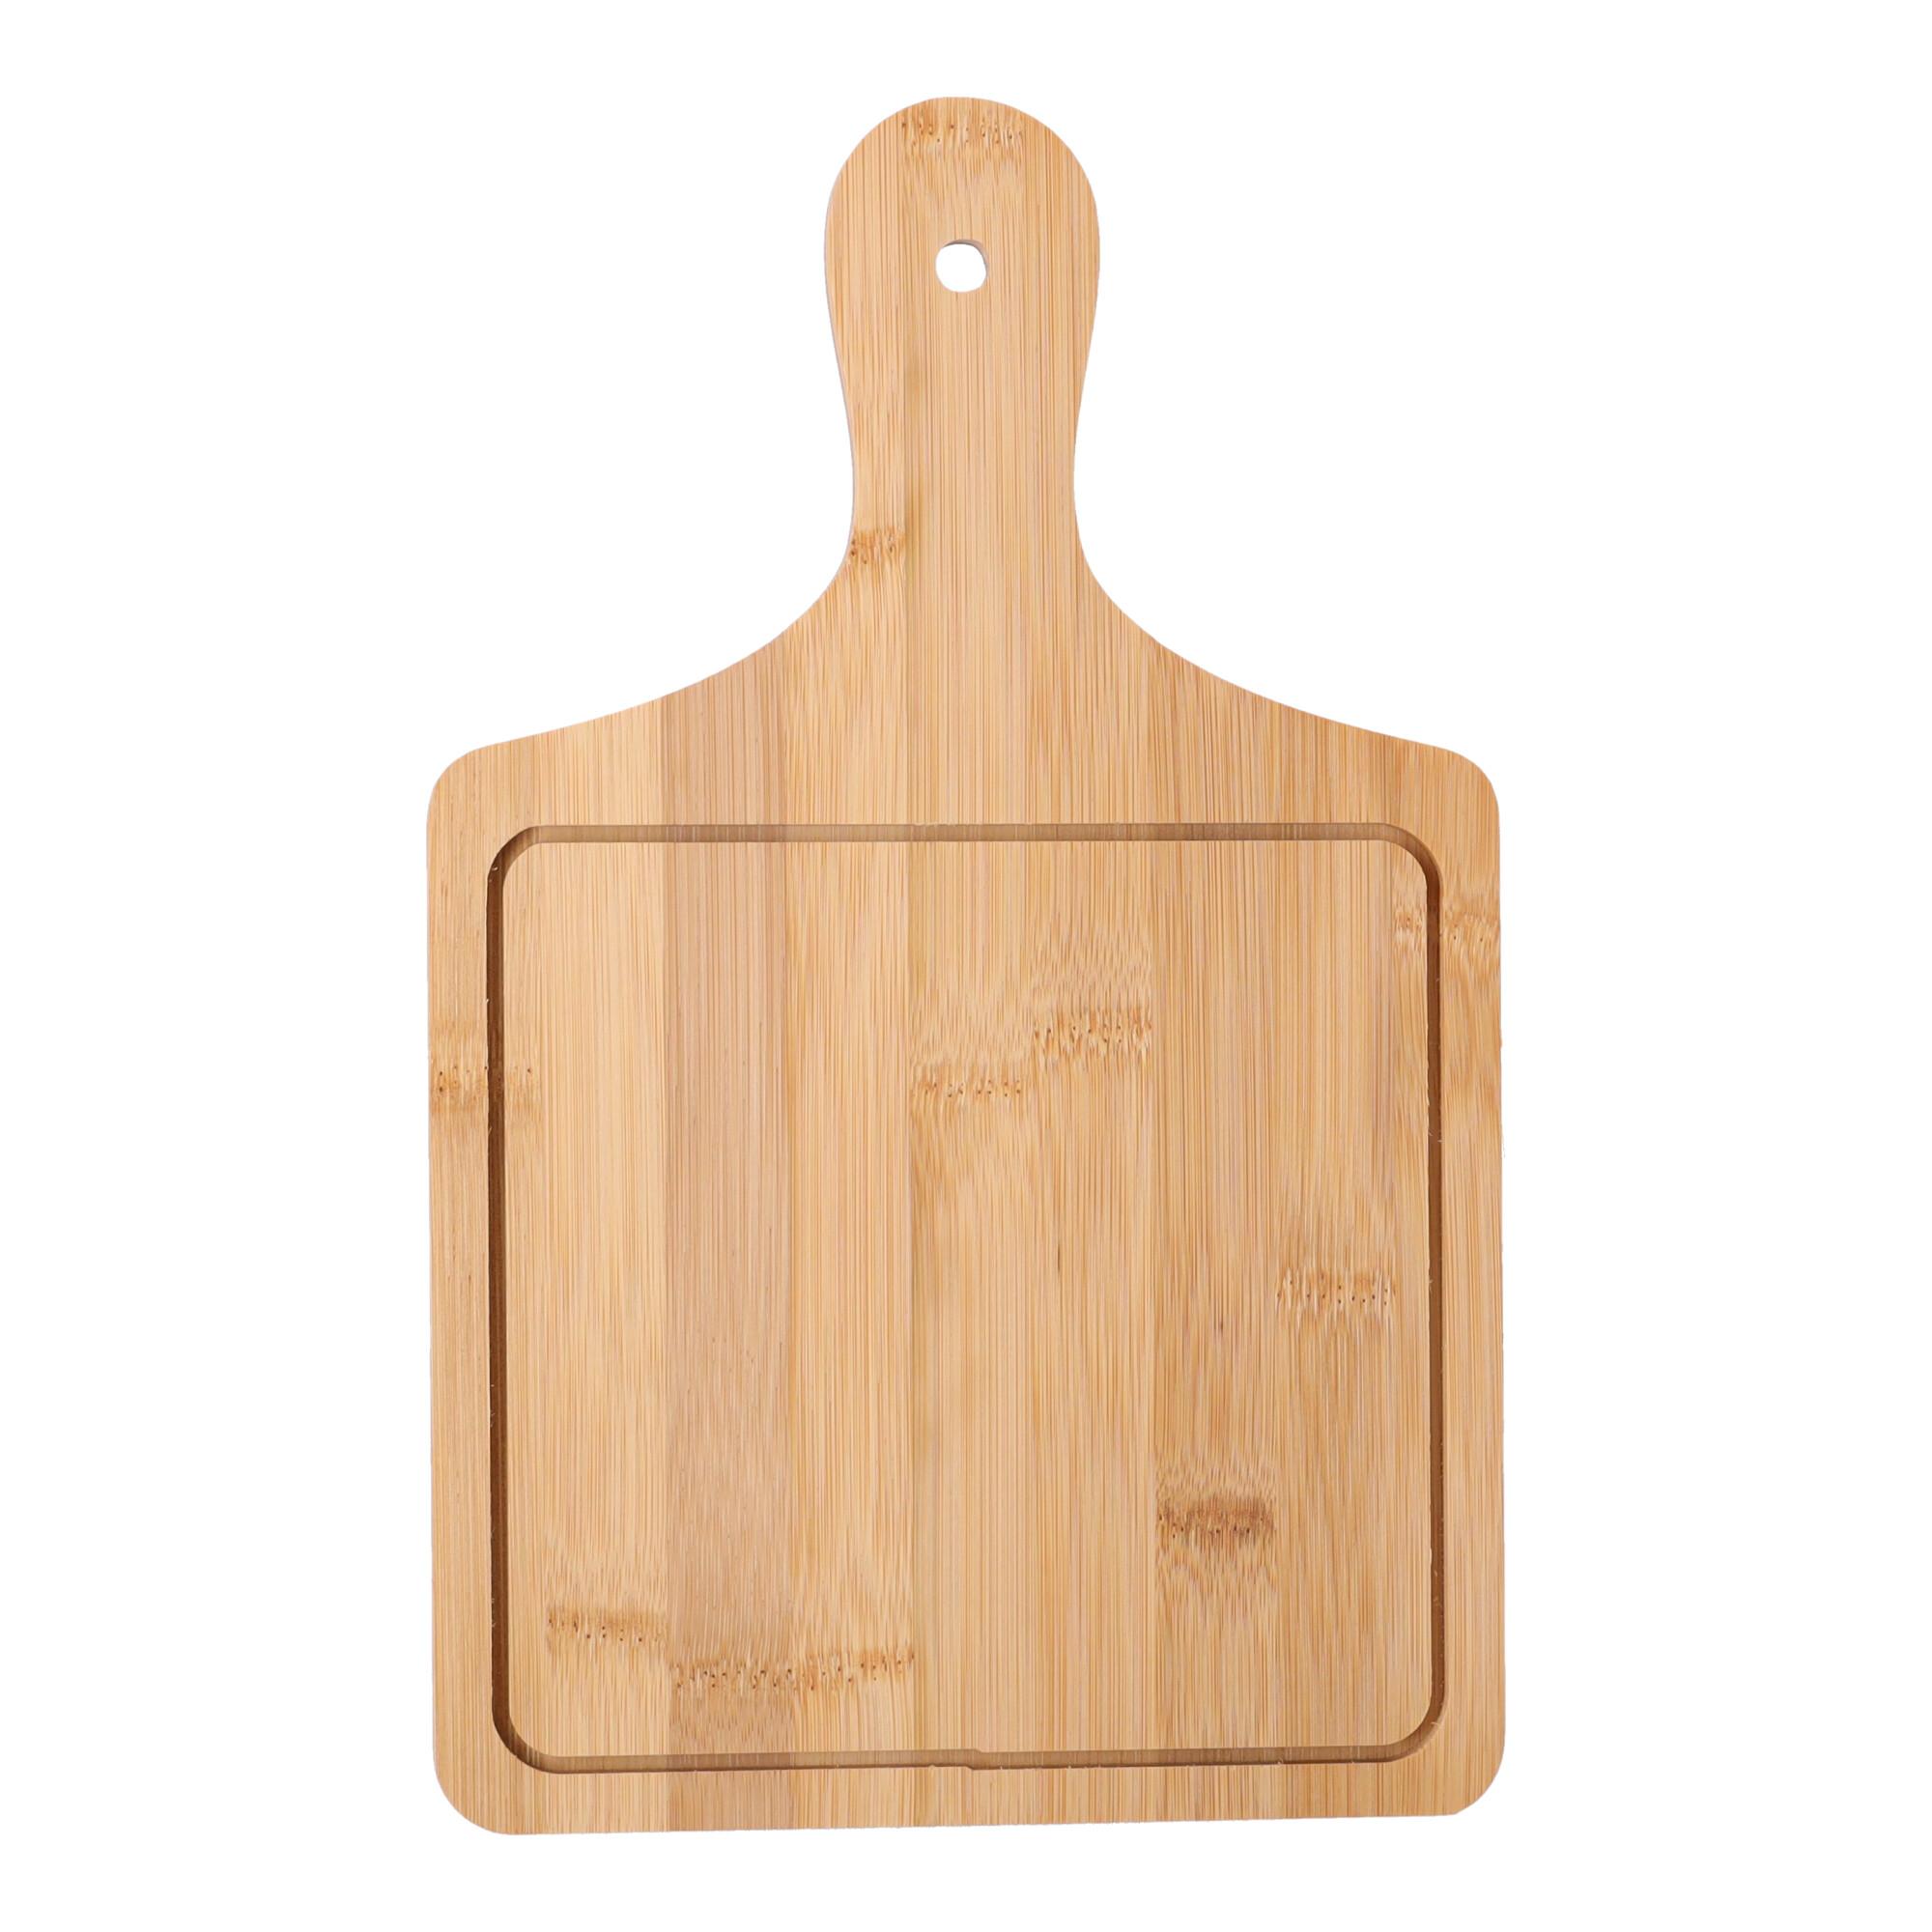 Wooden pizza board - square, small